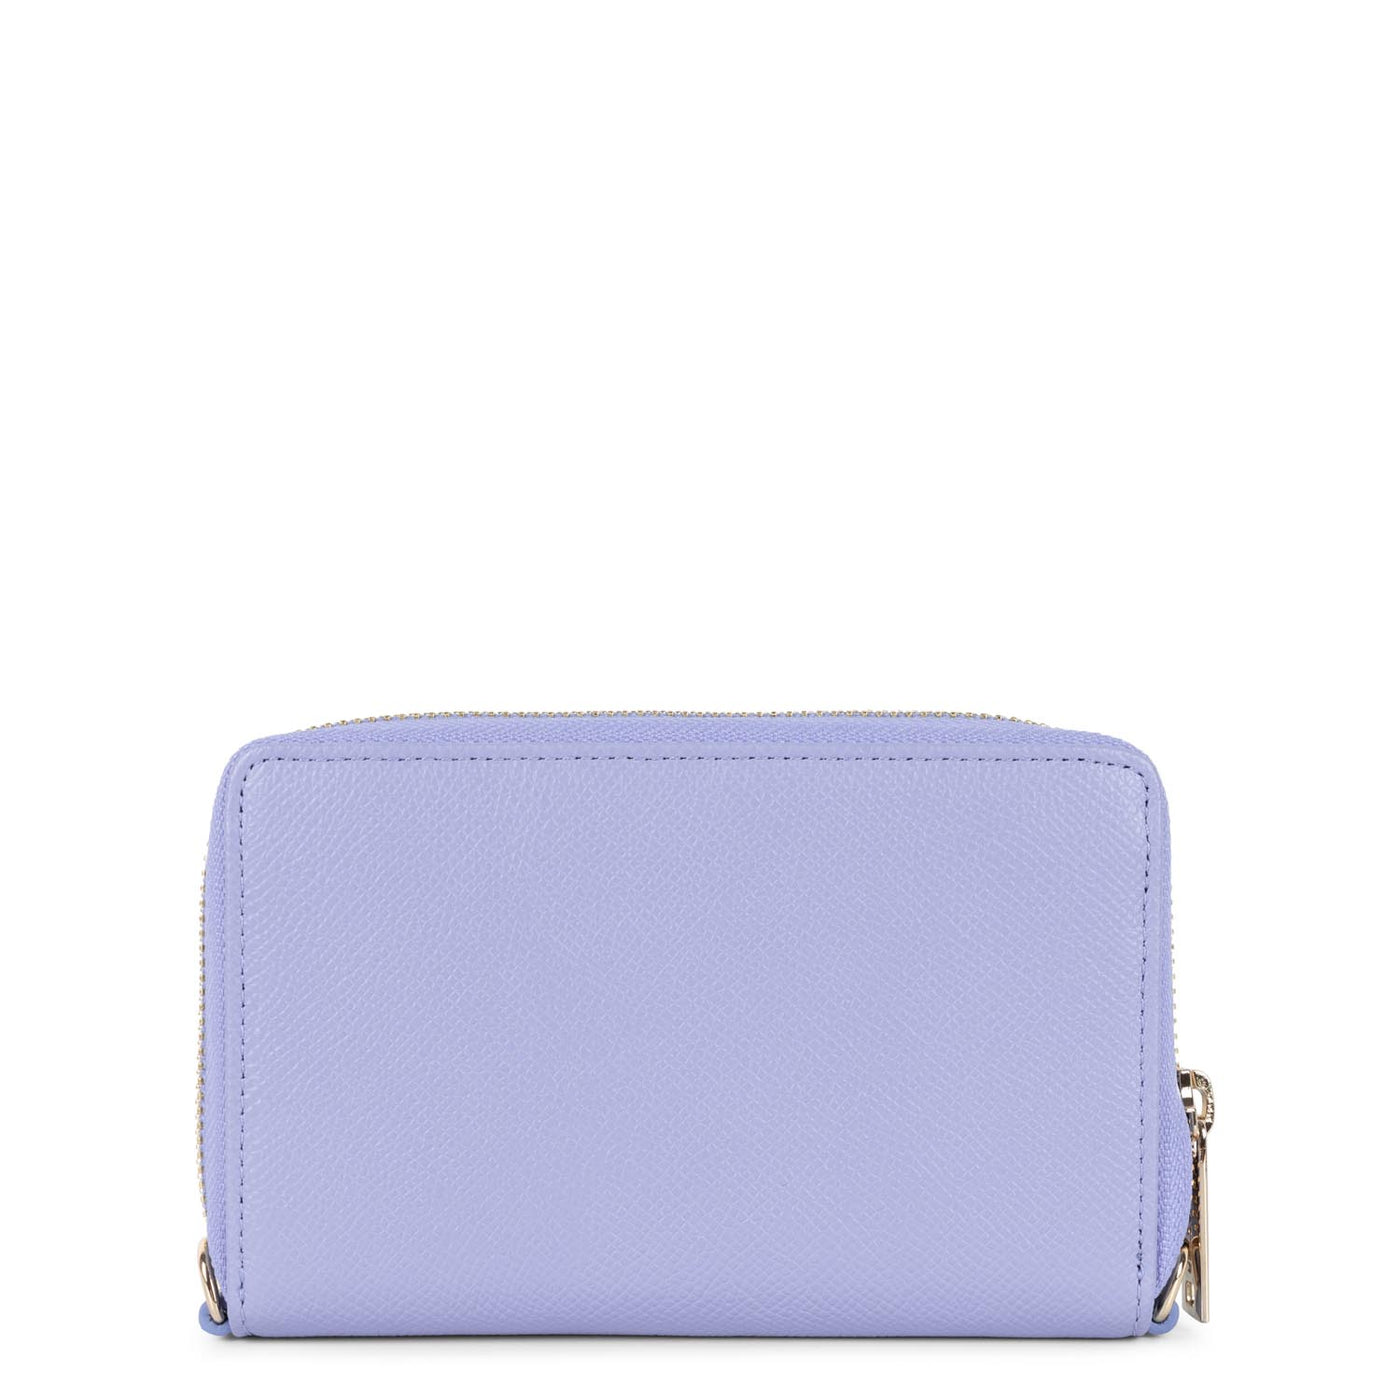 wallet - delphino #couleur_lavande